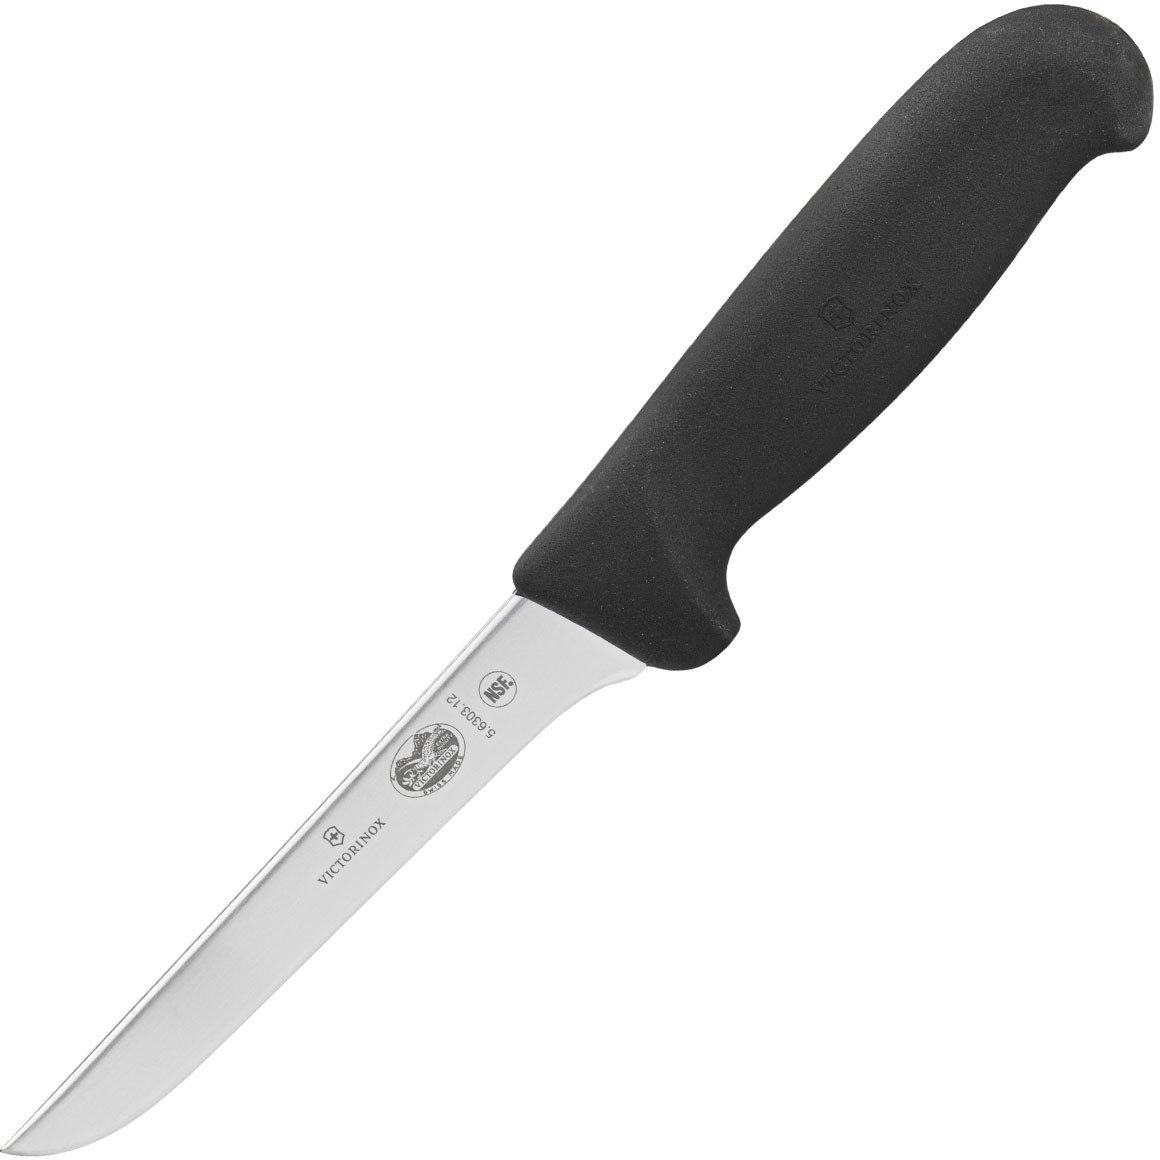 Victorinox Sıyırma Dar Bıçak 12 cm Kemiksiz Bıçağı 7.6303.12 Fibrox